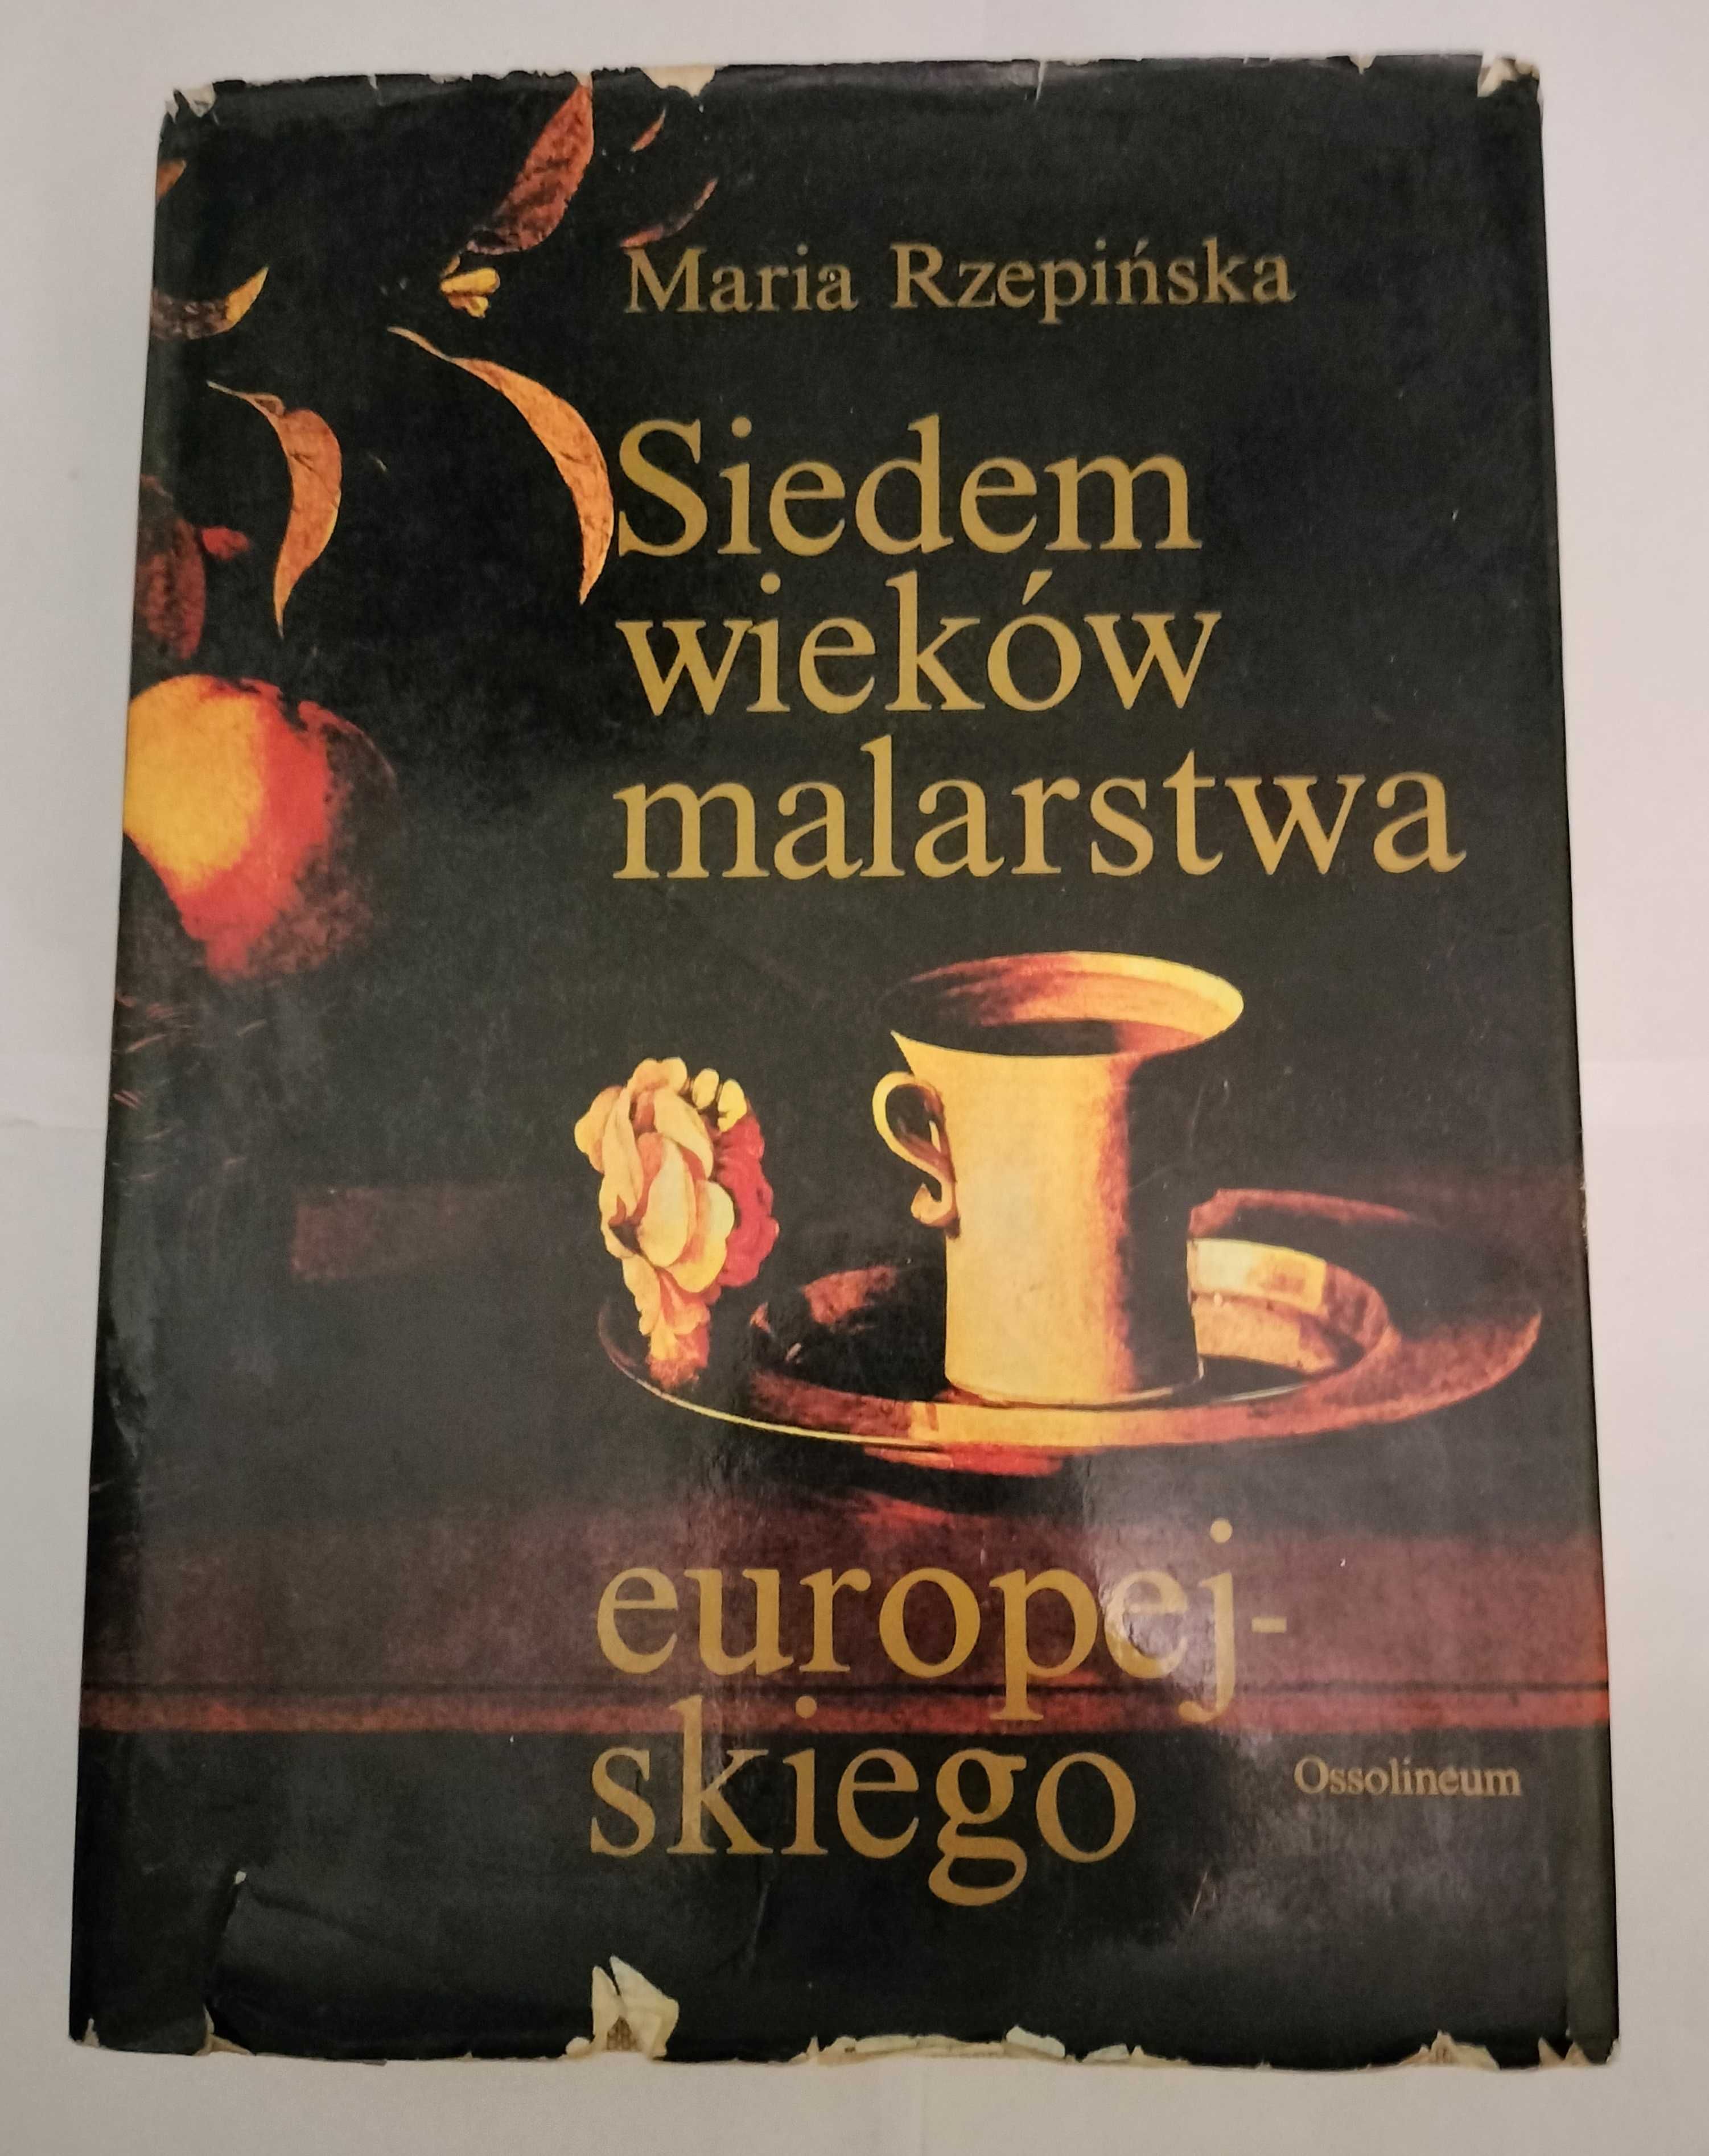 Maria Rzepińska Siedem wieków malarstwa europejskiego - 1988